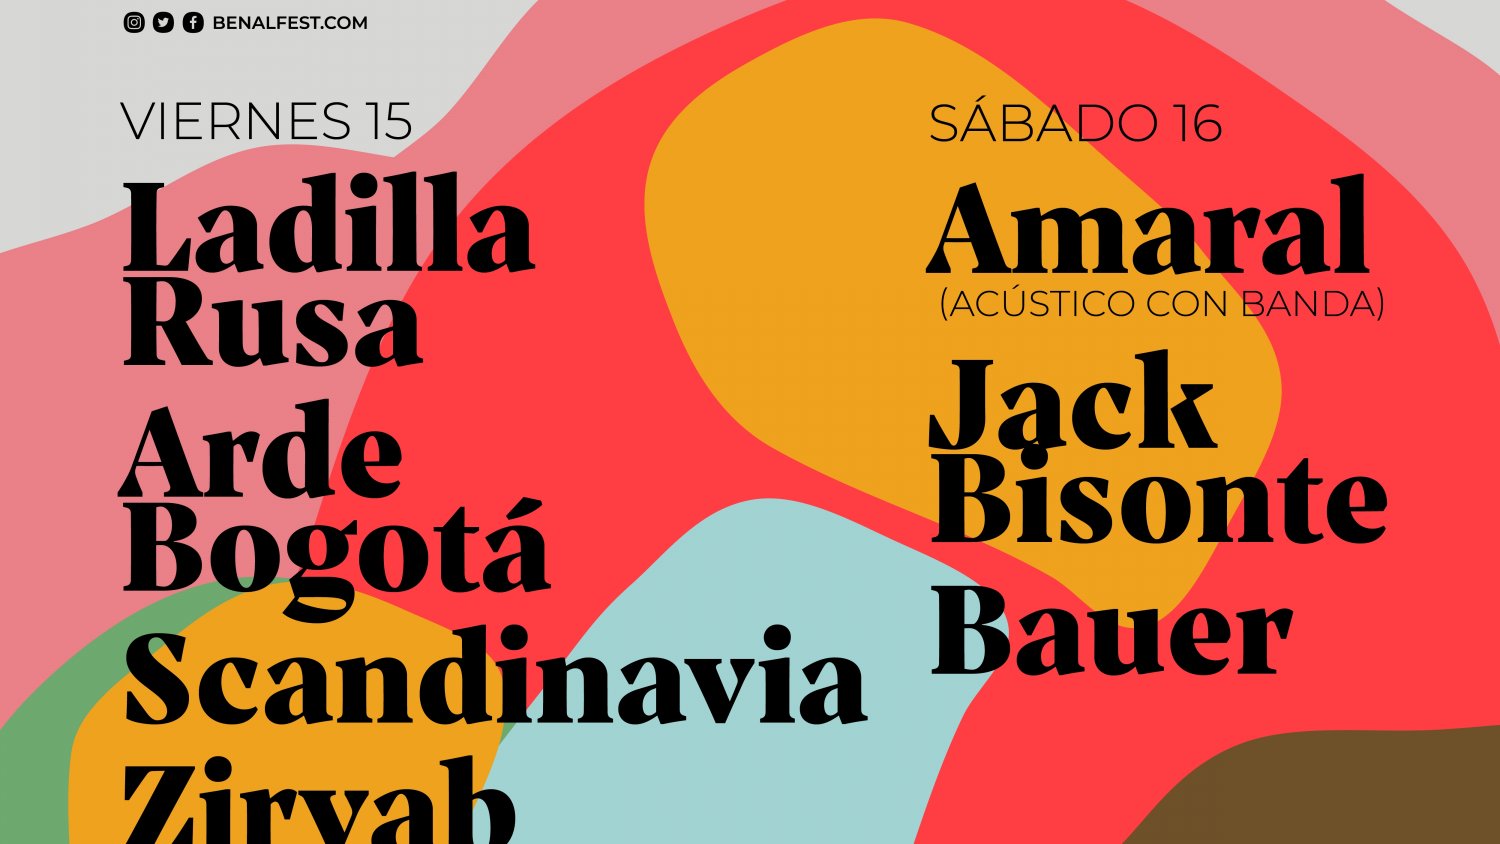 El festival musical Benafalfest vuelve a Benalmádena el 15 y 16 de octubre